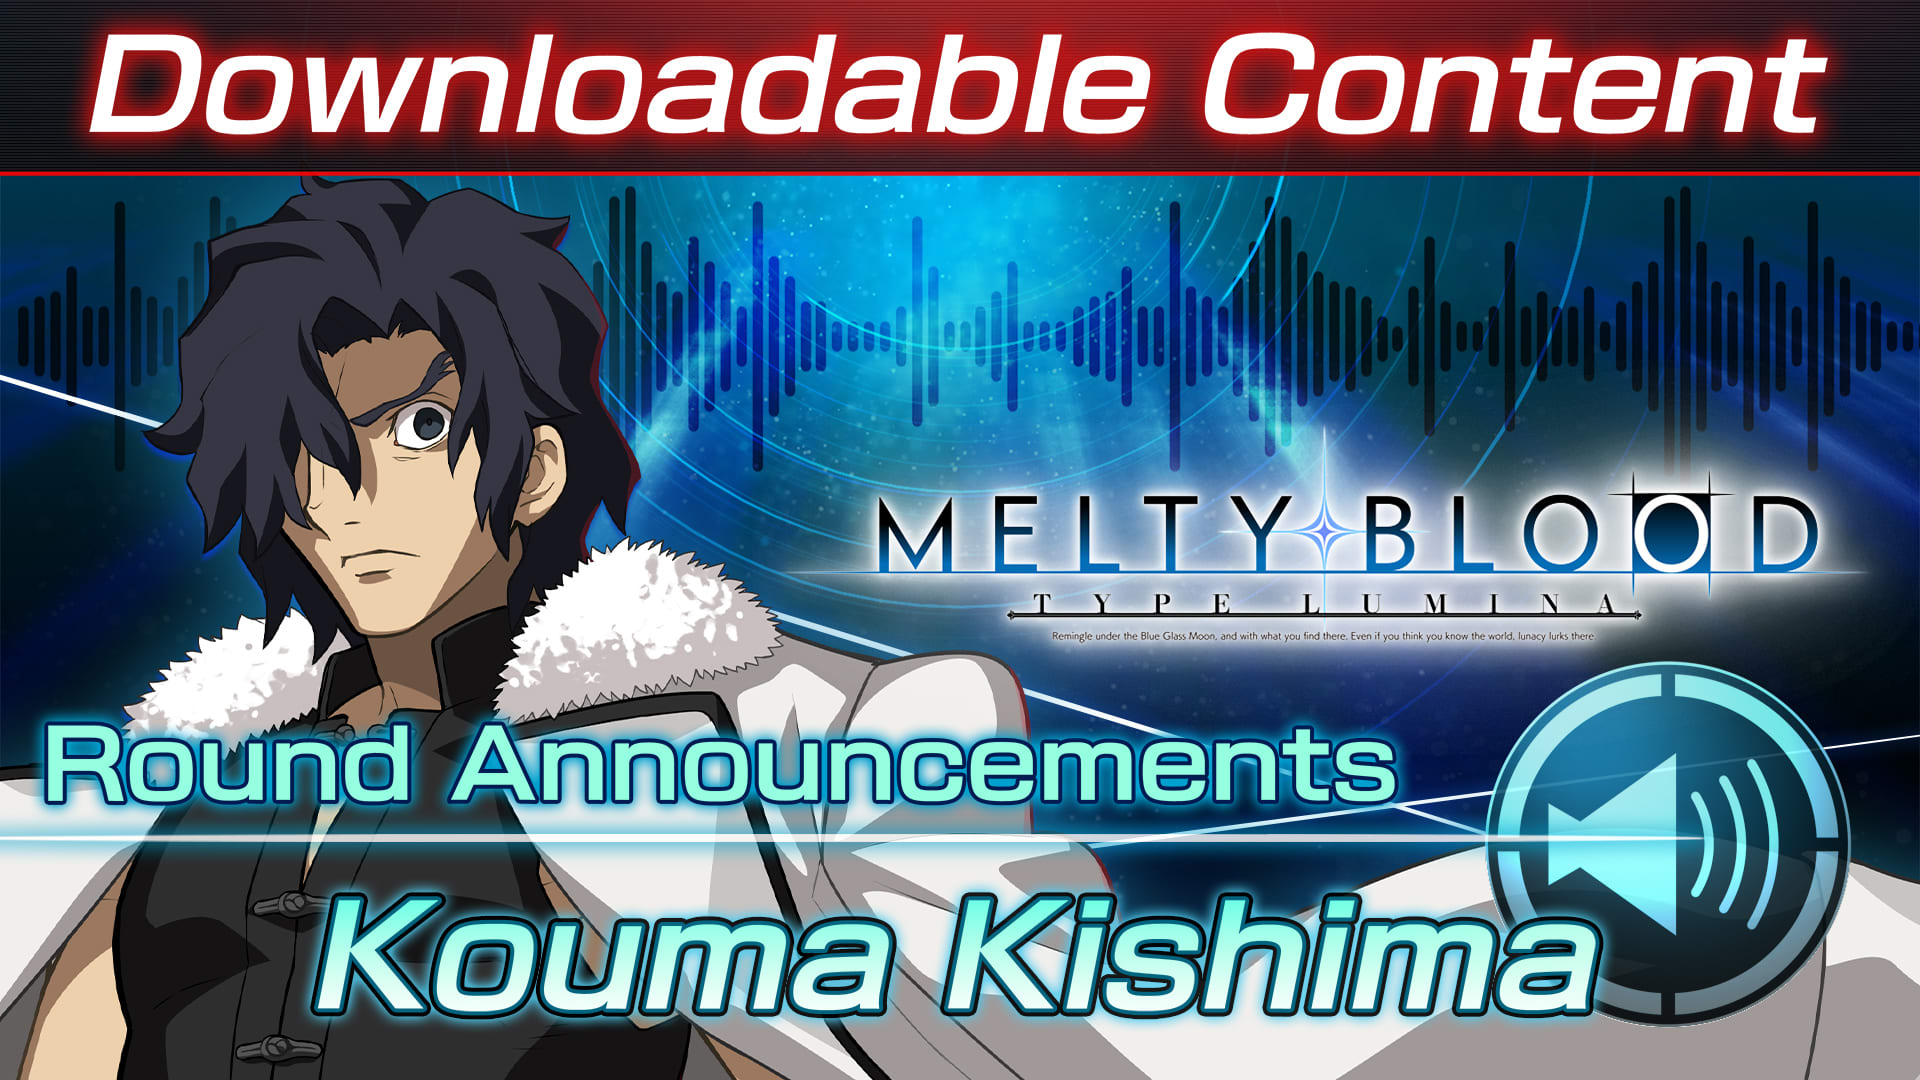 Conteúdo adicional "Voz de anúncio do round: Kouma Kishima"